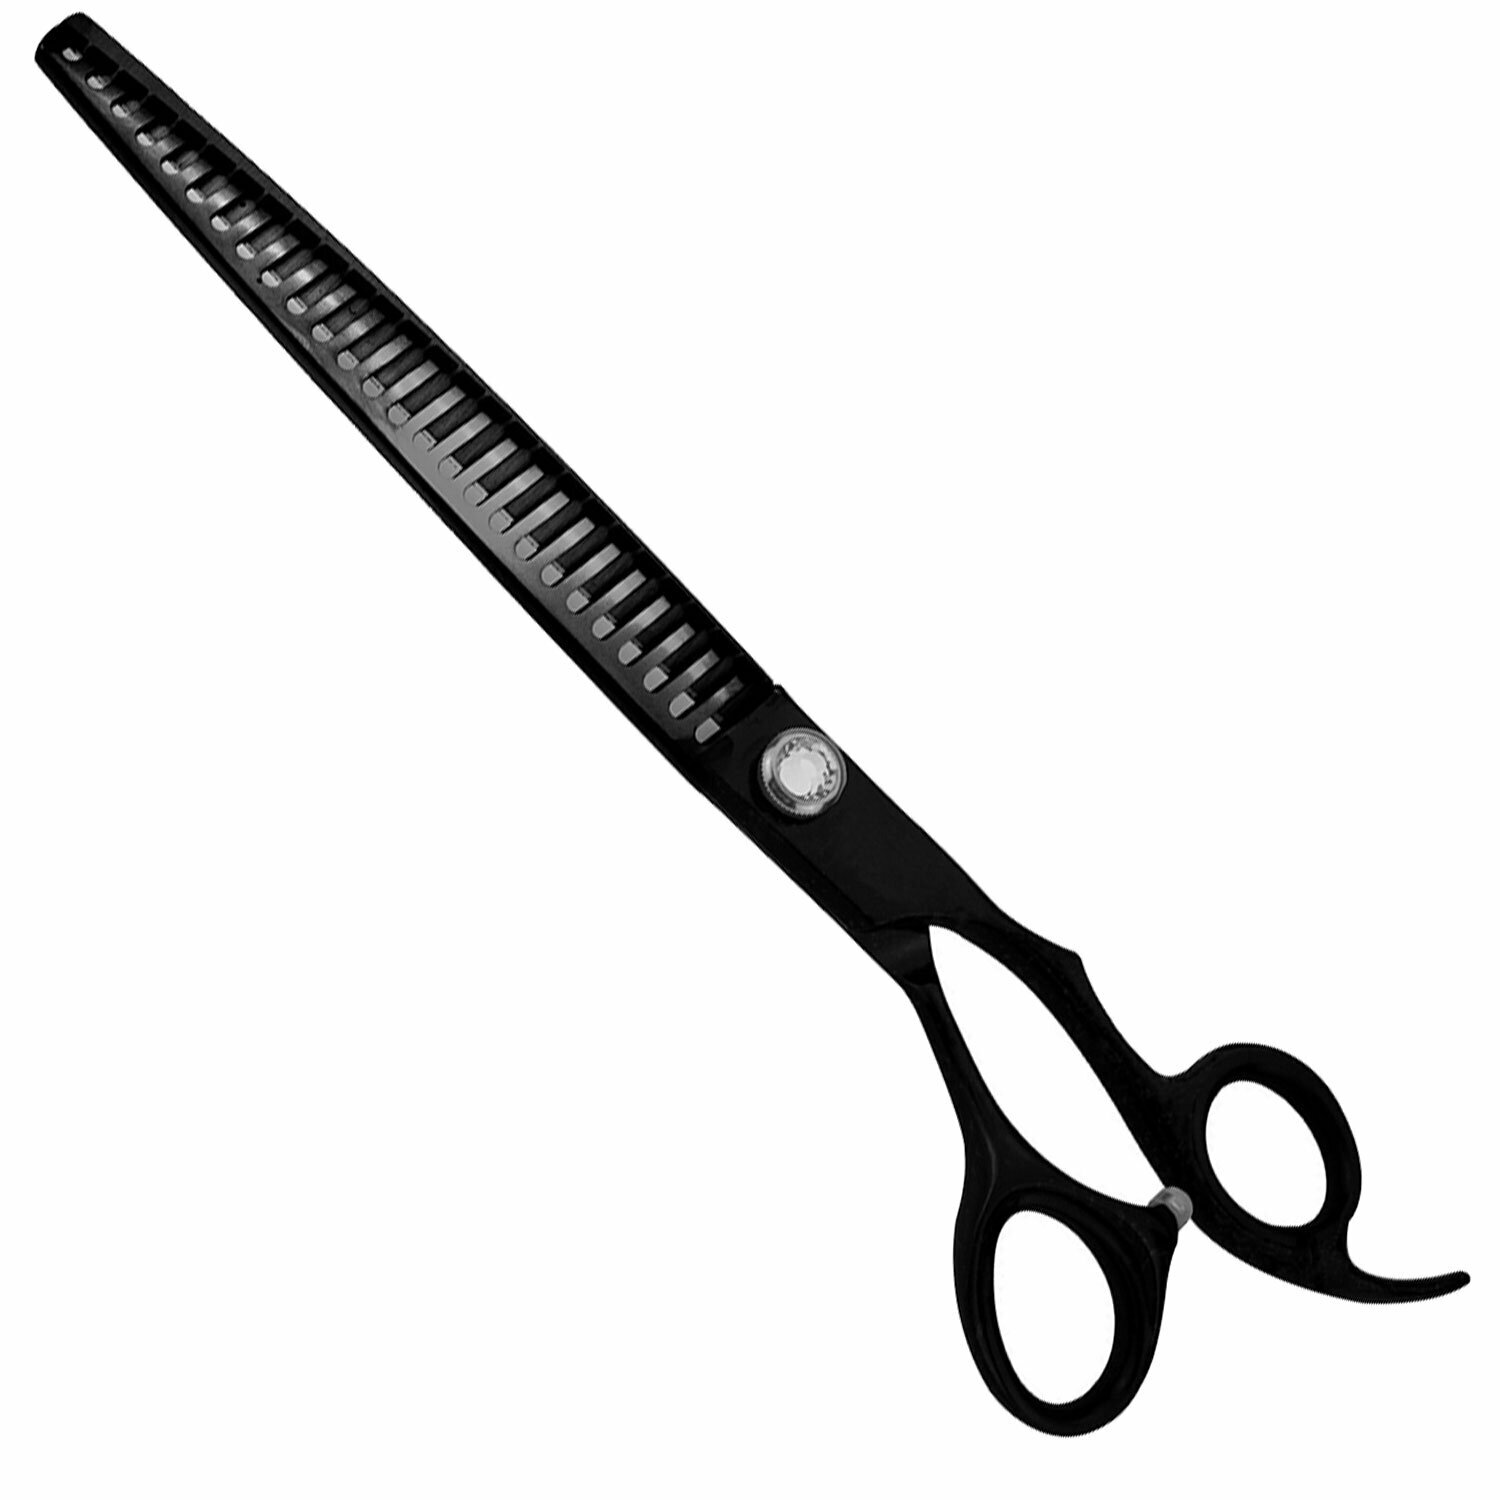 Coarse chunker scissors 21,5 cm with 26 teeth